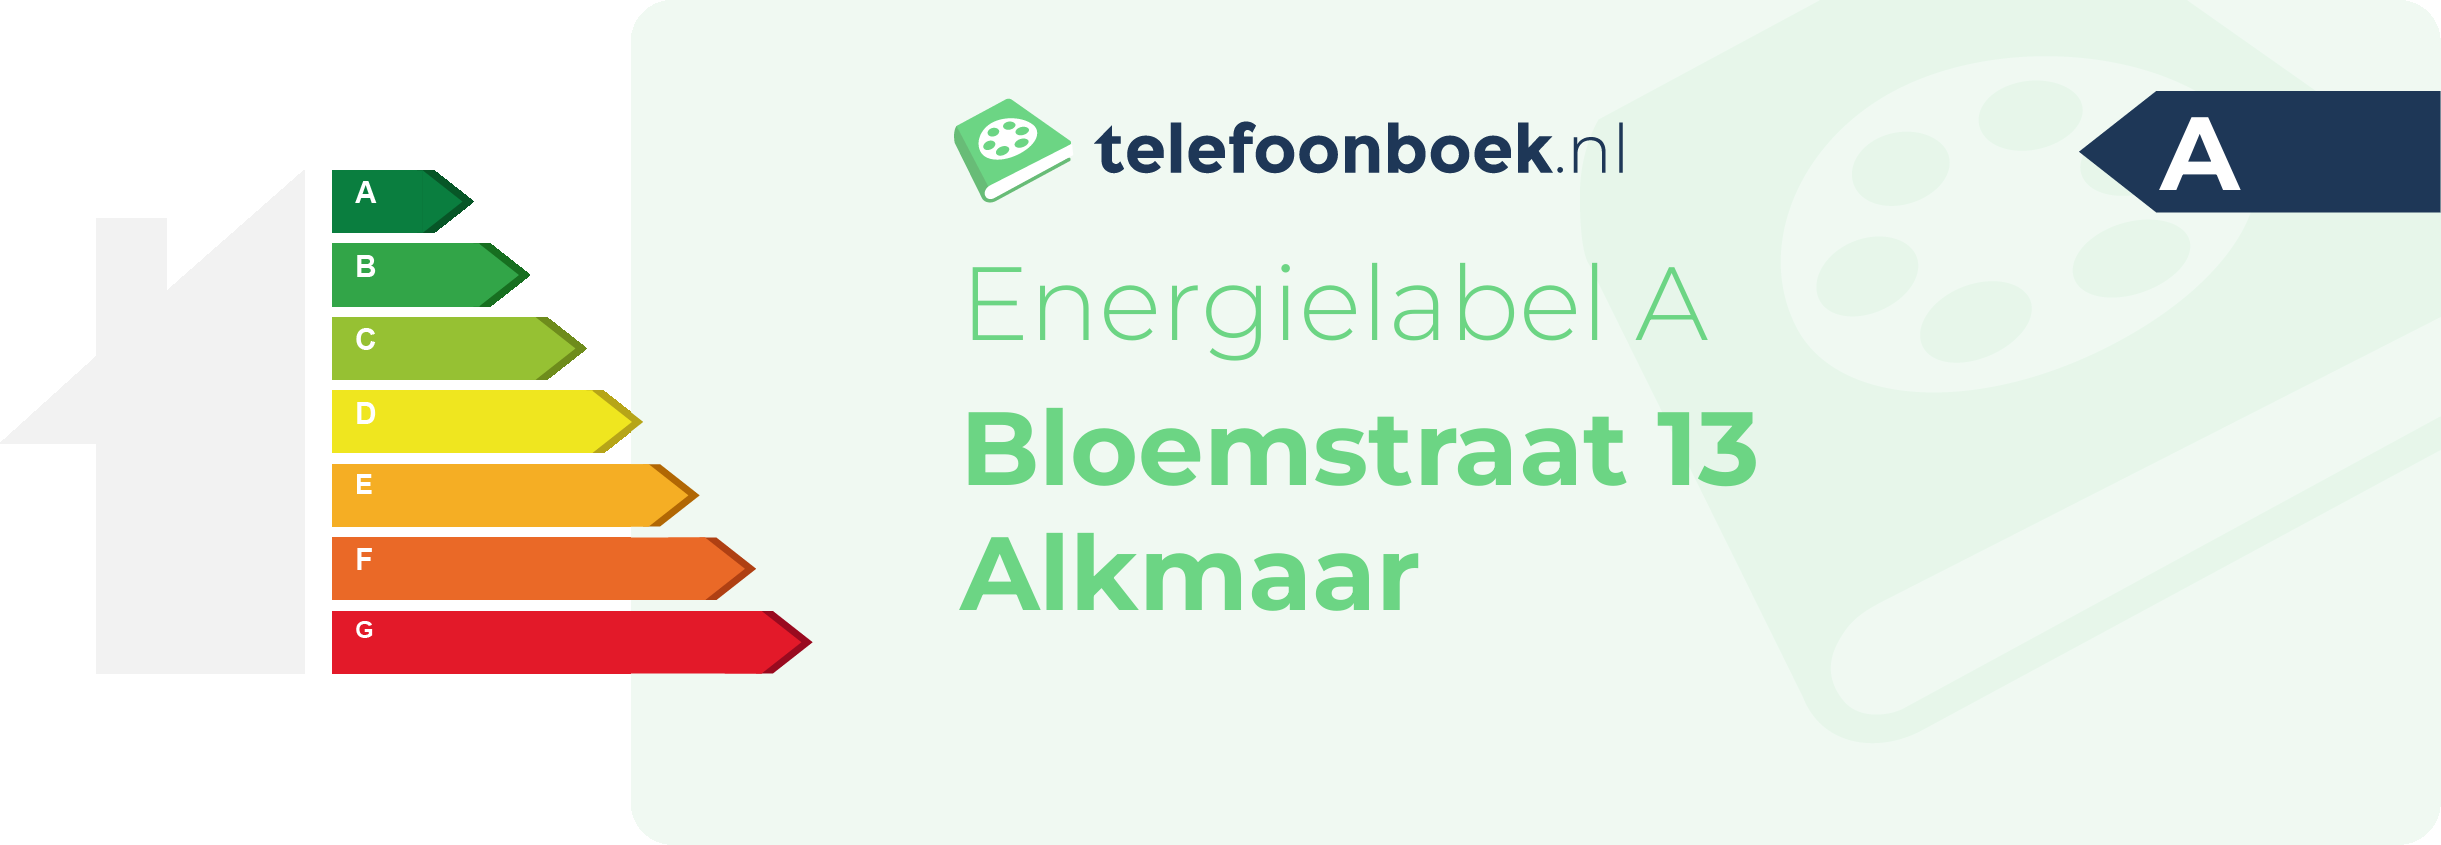 Energielabel Bloemstraat 13 Alkmaar